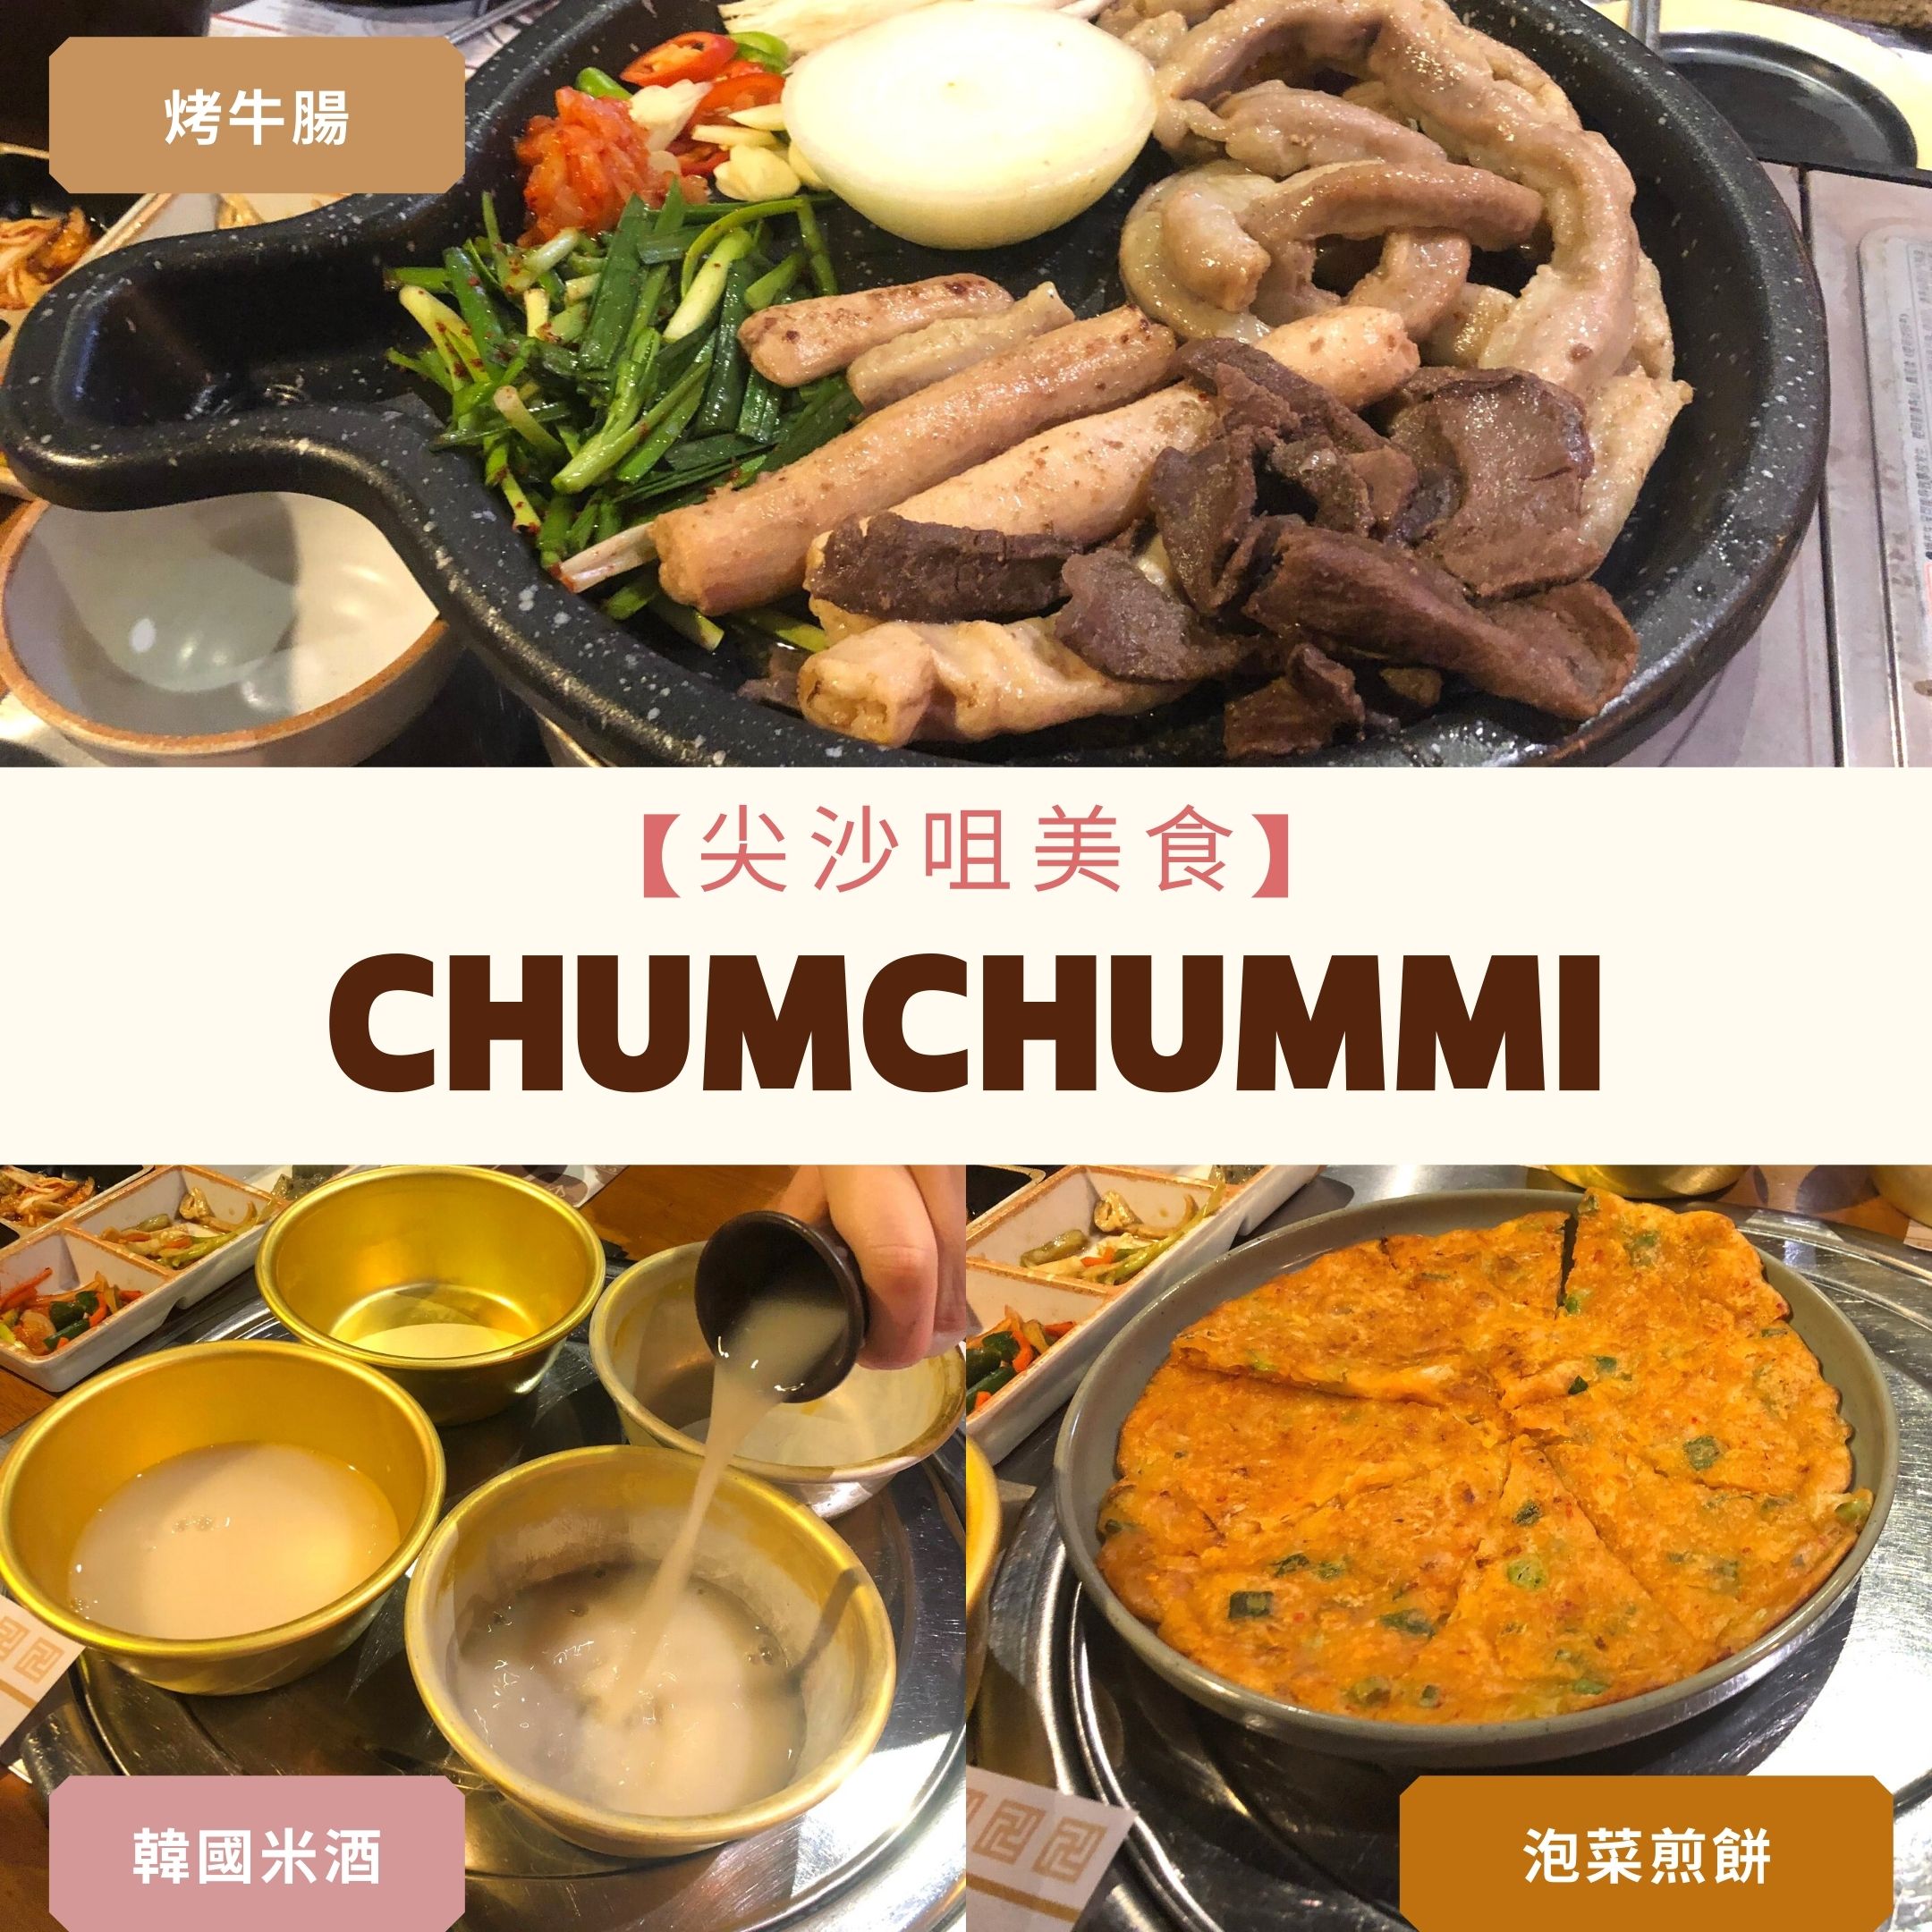 ChumChum味-尖沙咀韓國餐廳-Featured-Image